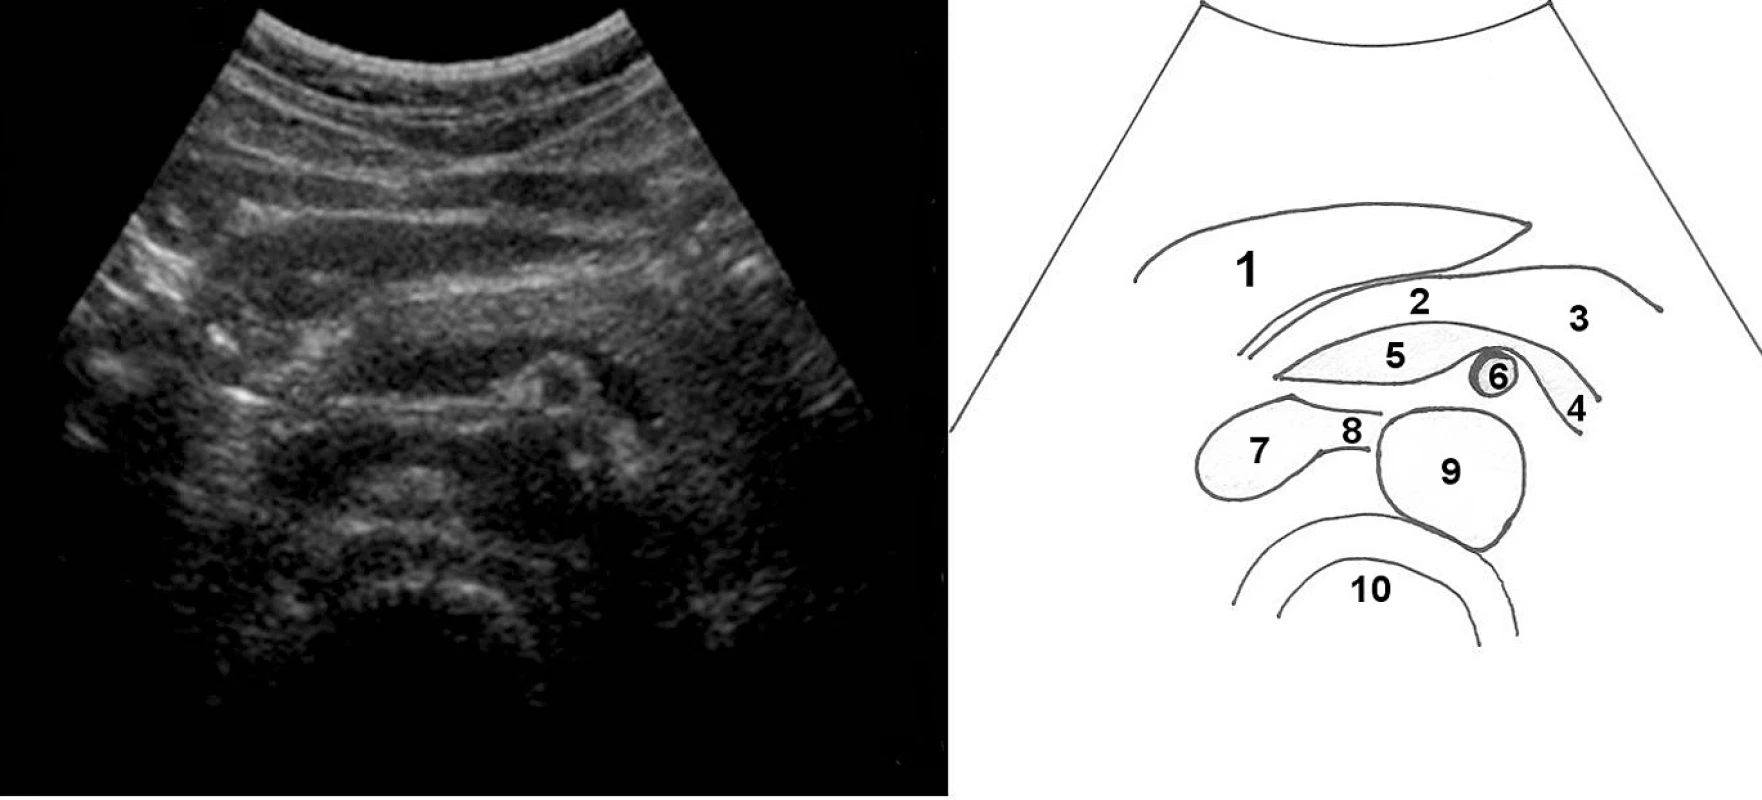 Příčný řez středním epigastriem; 1 – levý lalok jater, 2 – tělo pankreatu, 3 – kauda pankreatu, 4 – vena lienalis, která se mediálně spojuje s vena epigastrica superior ve 5 – vena portae, 6 – příčně zachycená a. mesenterica superior, 7 – vena cava inferior a do ní vstupující 8 – vena renalis l. sin. přebíhající aortu (zde její průběh nad aortou komprimován), 9 – aorta, 10 – tělo obratle (pravděpodobně L1)